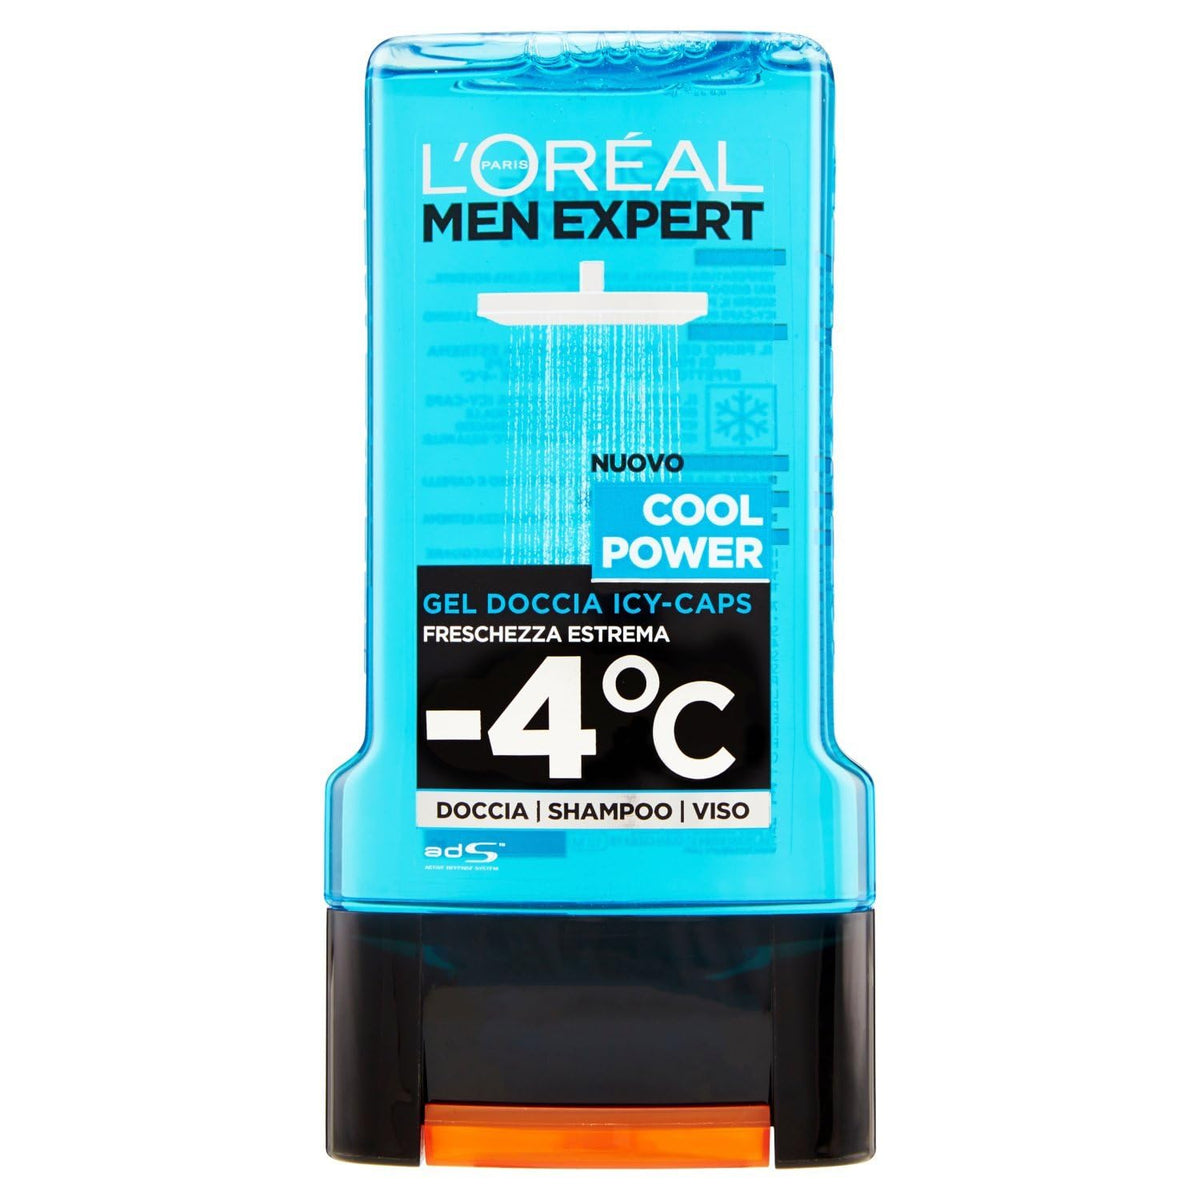 L'Oreal Men Expert Shower Gel - Cool Power (For Body, Face & Hair) 300ml